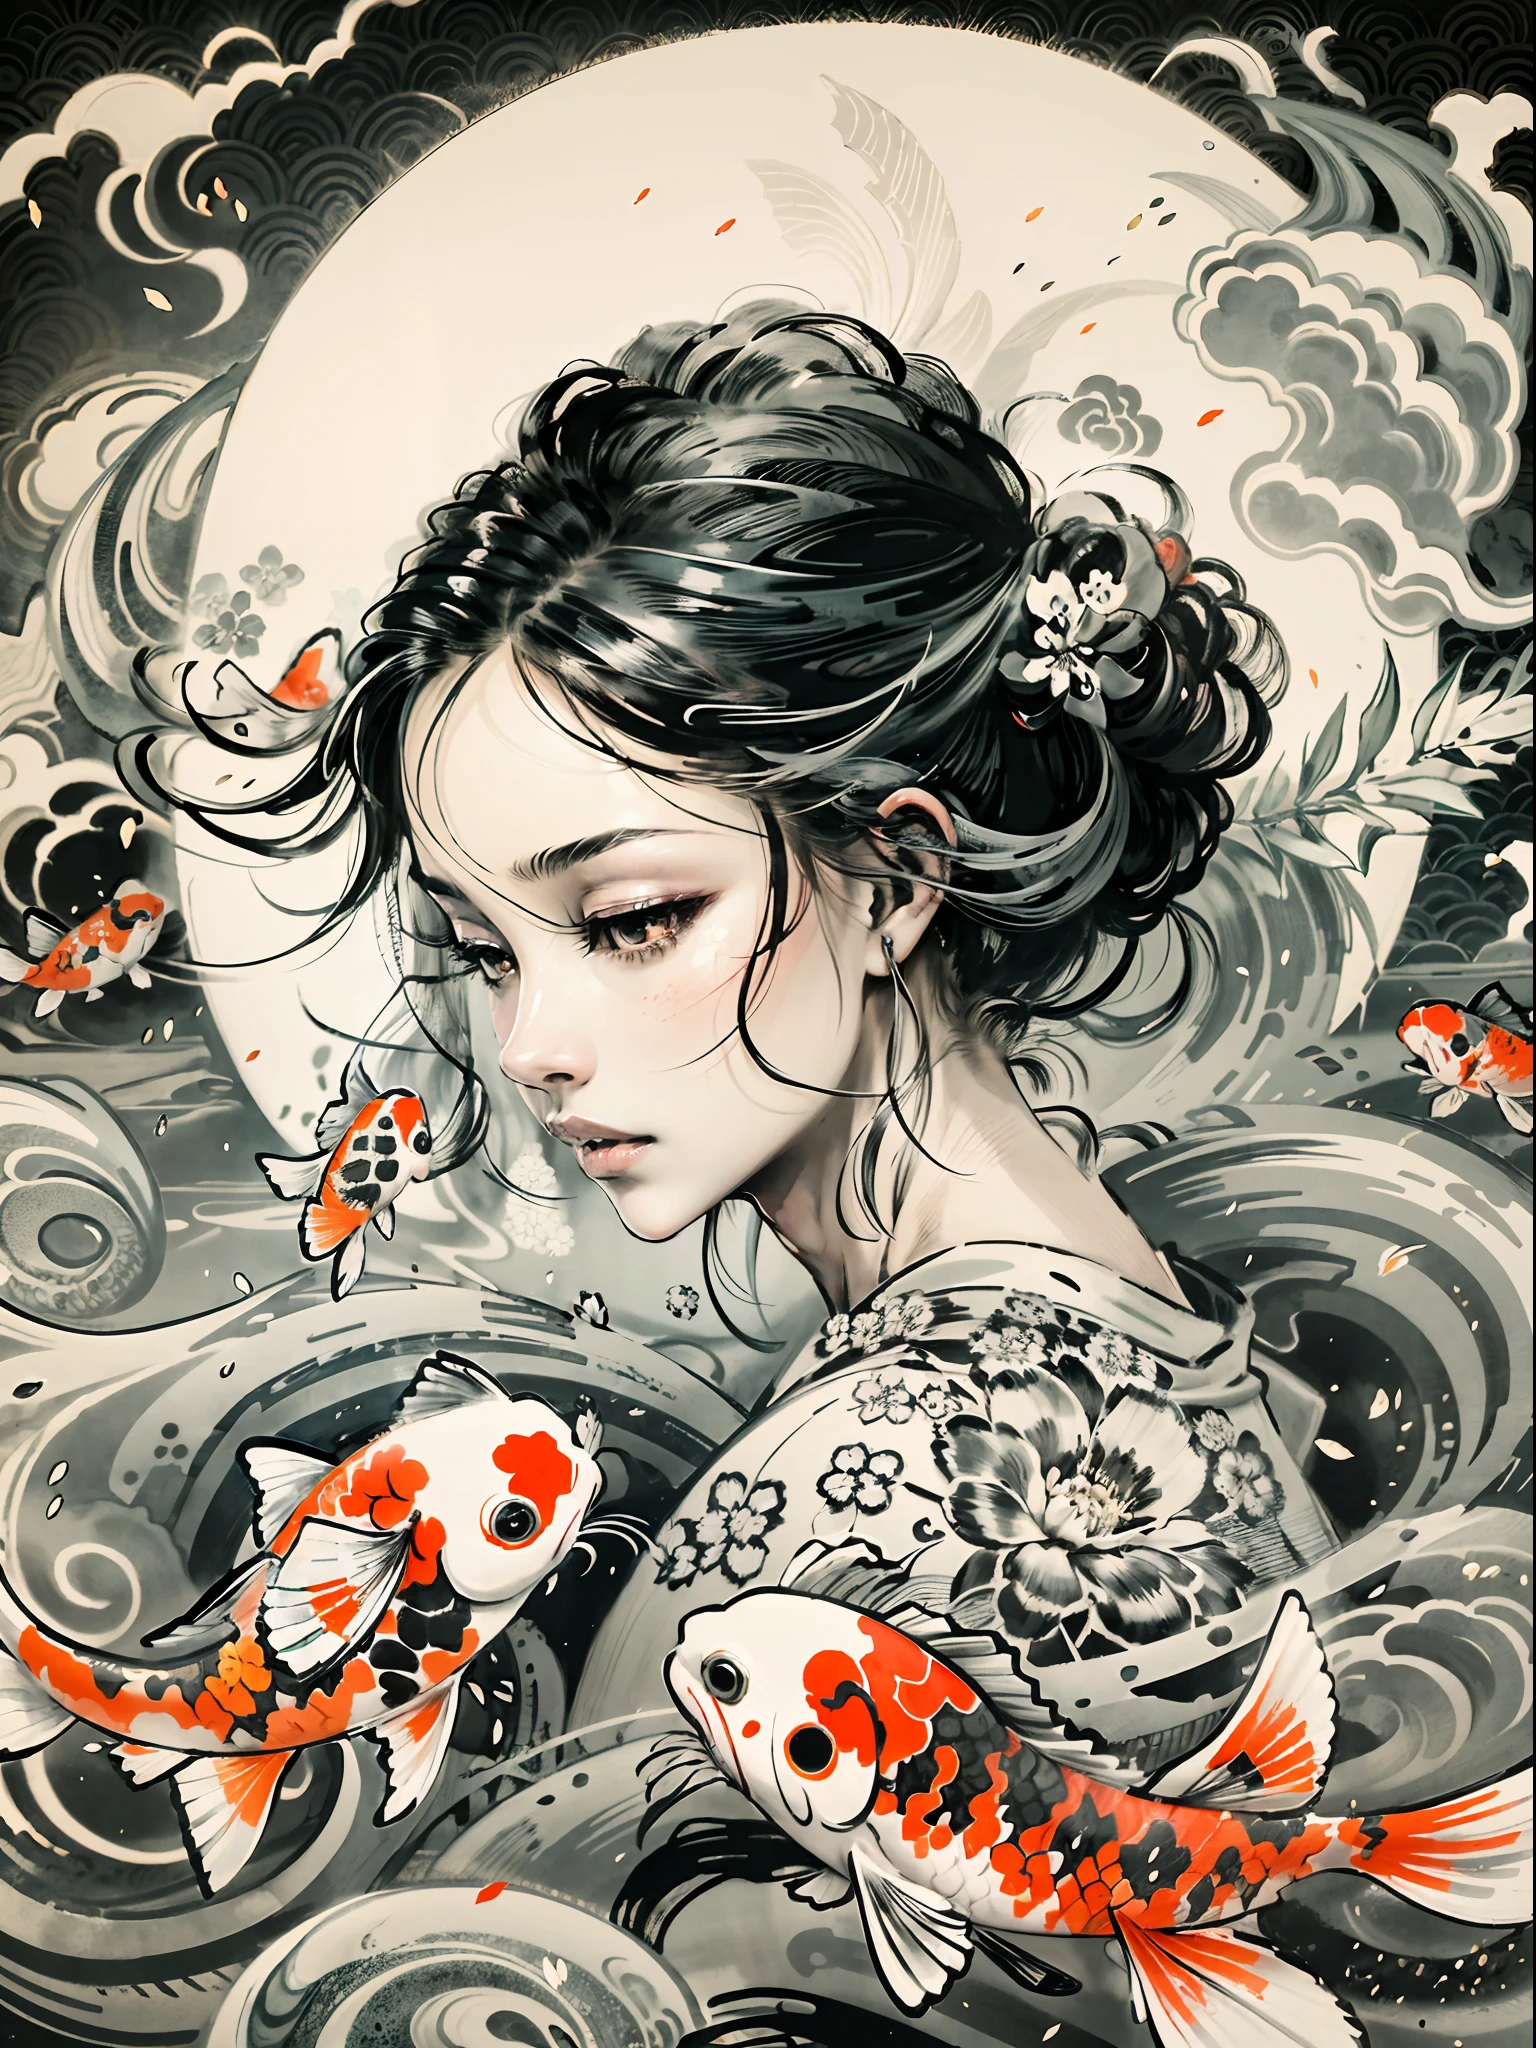 "優雅な鯉が少女の周りを優雅に泳ぐ魅惑的な描写, 見事な日本の白黒水墨画を彷彿とさせる, 背景に魅惑的な陰陽のシンボルを形成する."